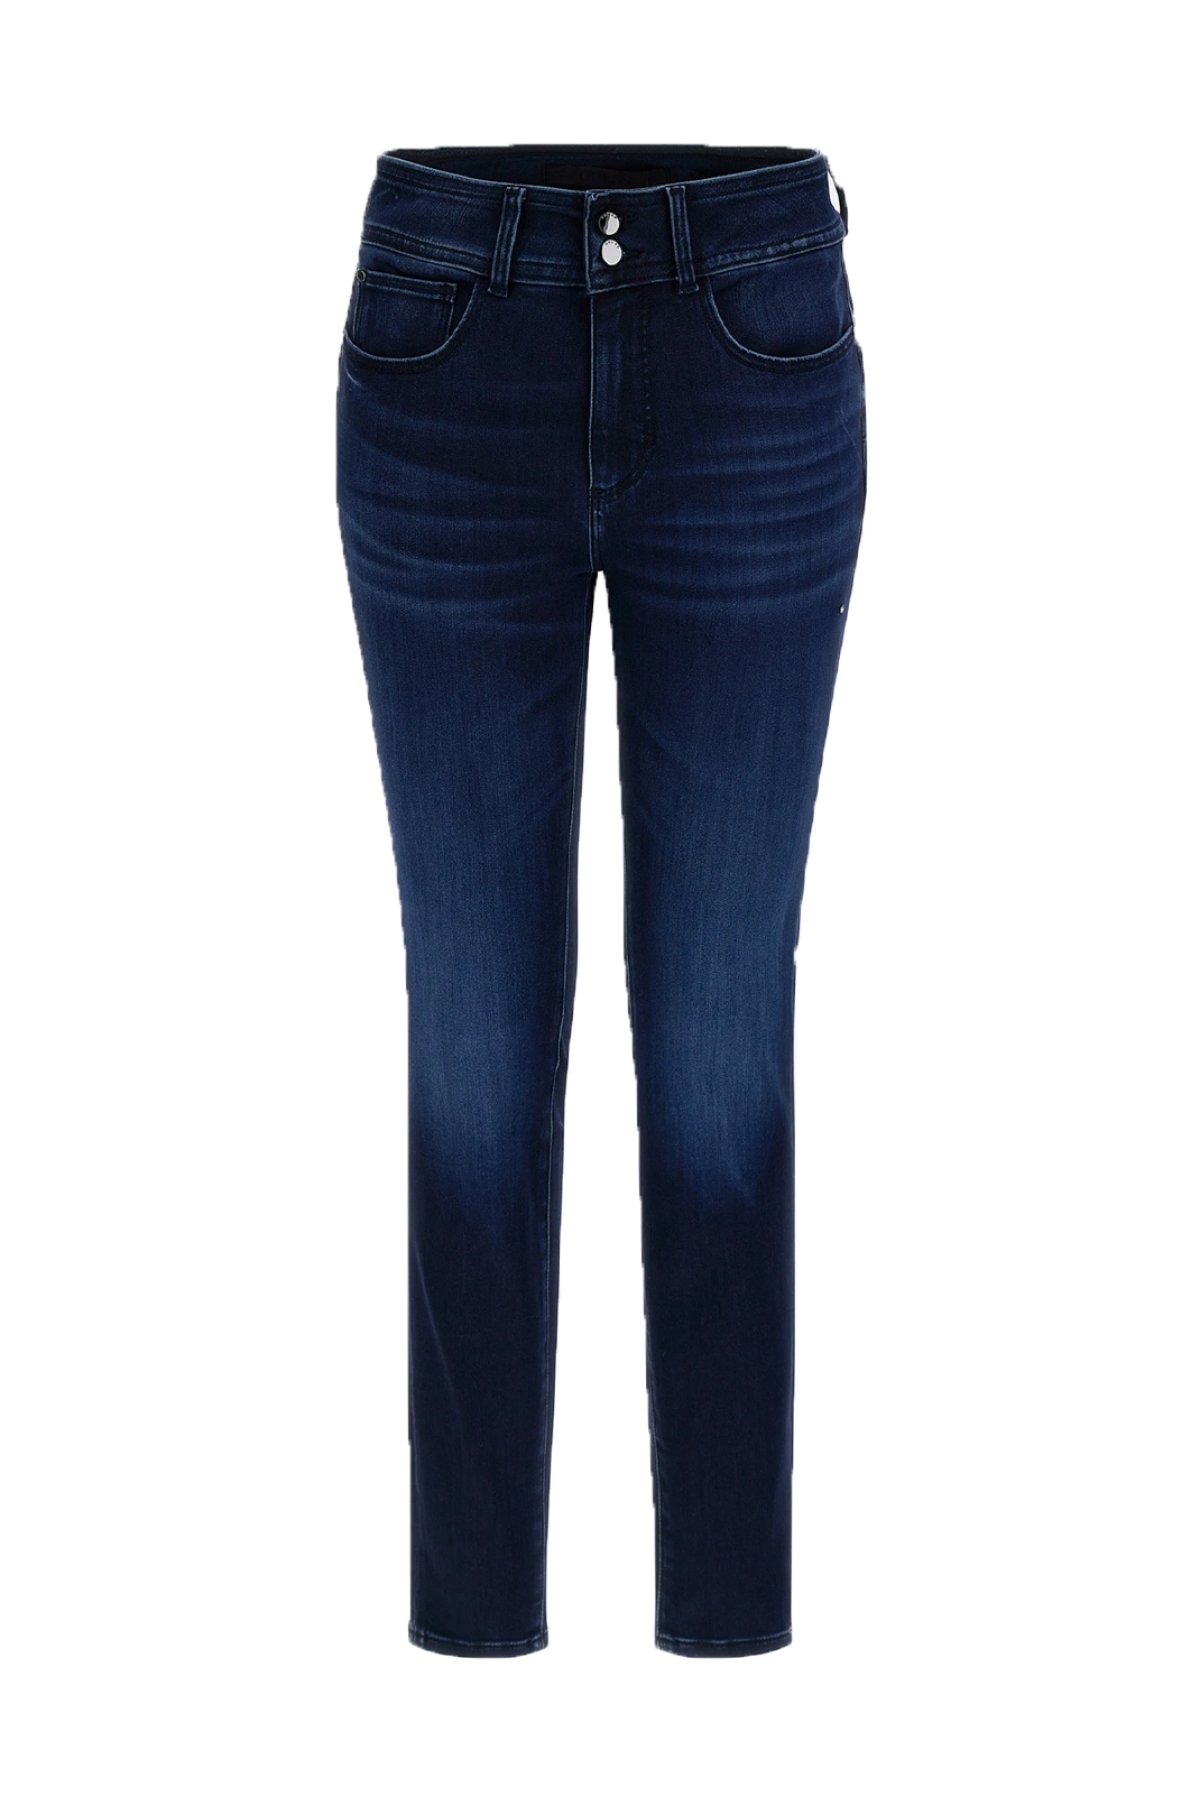 Guess Jeans W2BA91 D4H53 džíny modré